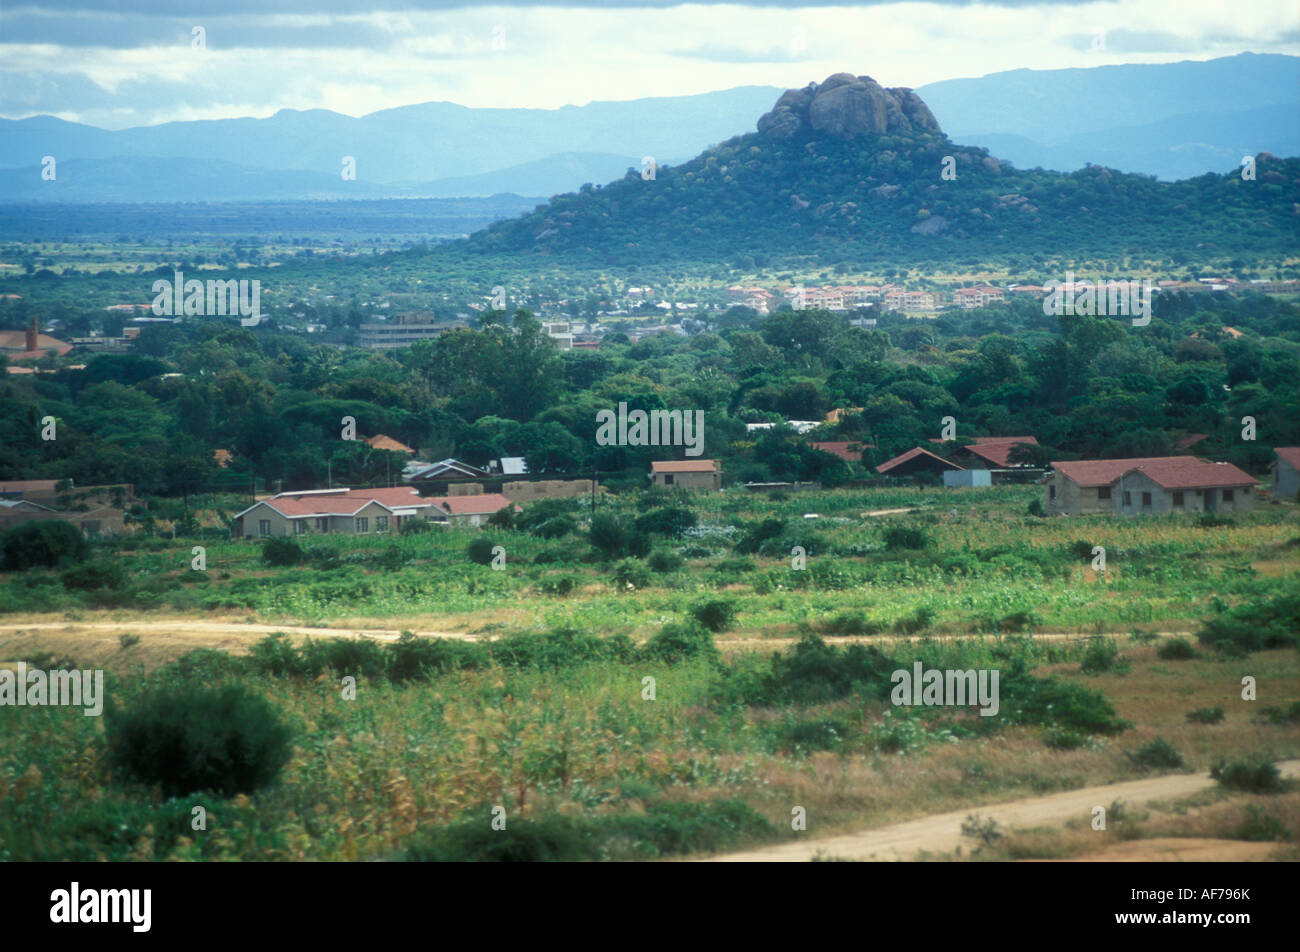 Dodoma capital of Tanzania. Stock Photo